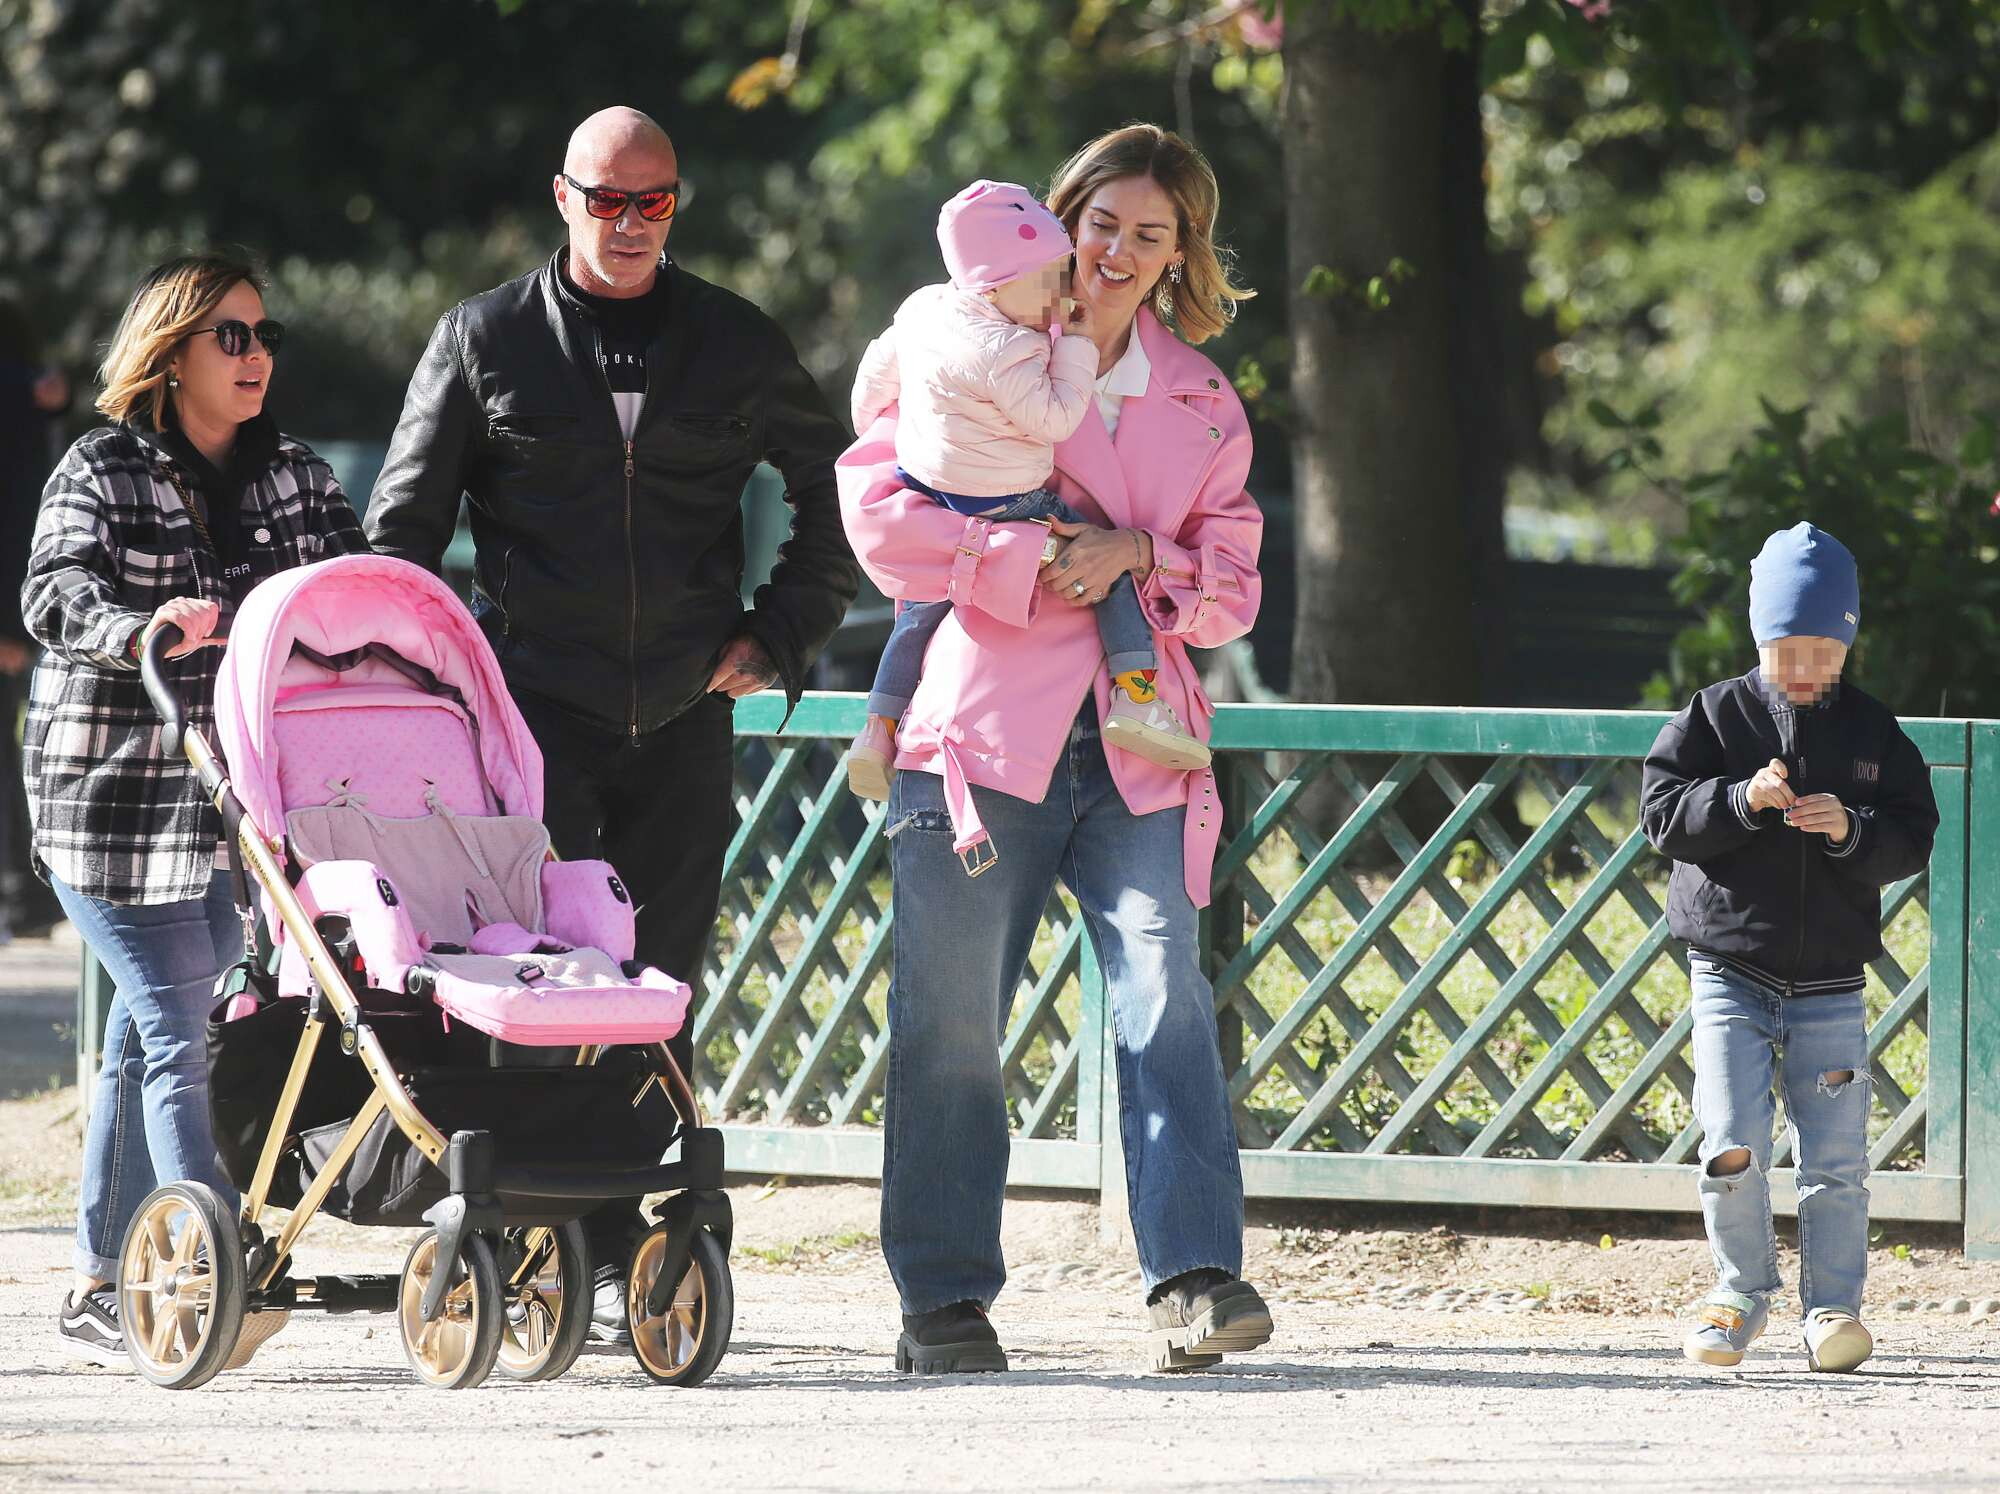 Chiara Ferragni è stata avvistata in pubblico per la prima volta dopo lo scandalo del pandoro, apparendo tranquilla durante una passeggiata al Parco Sempione con la famiglia.